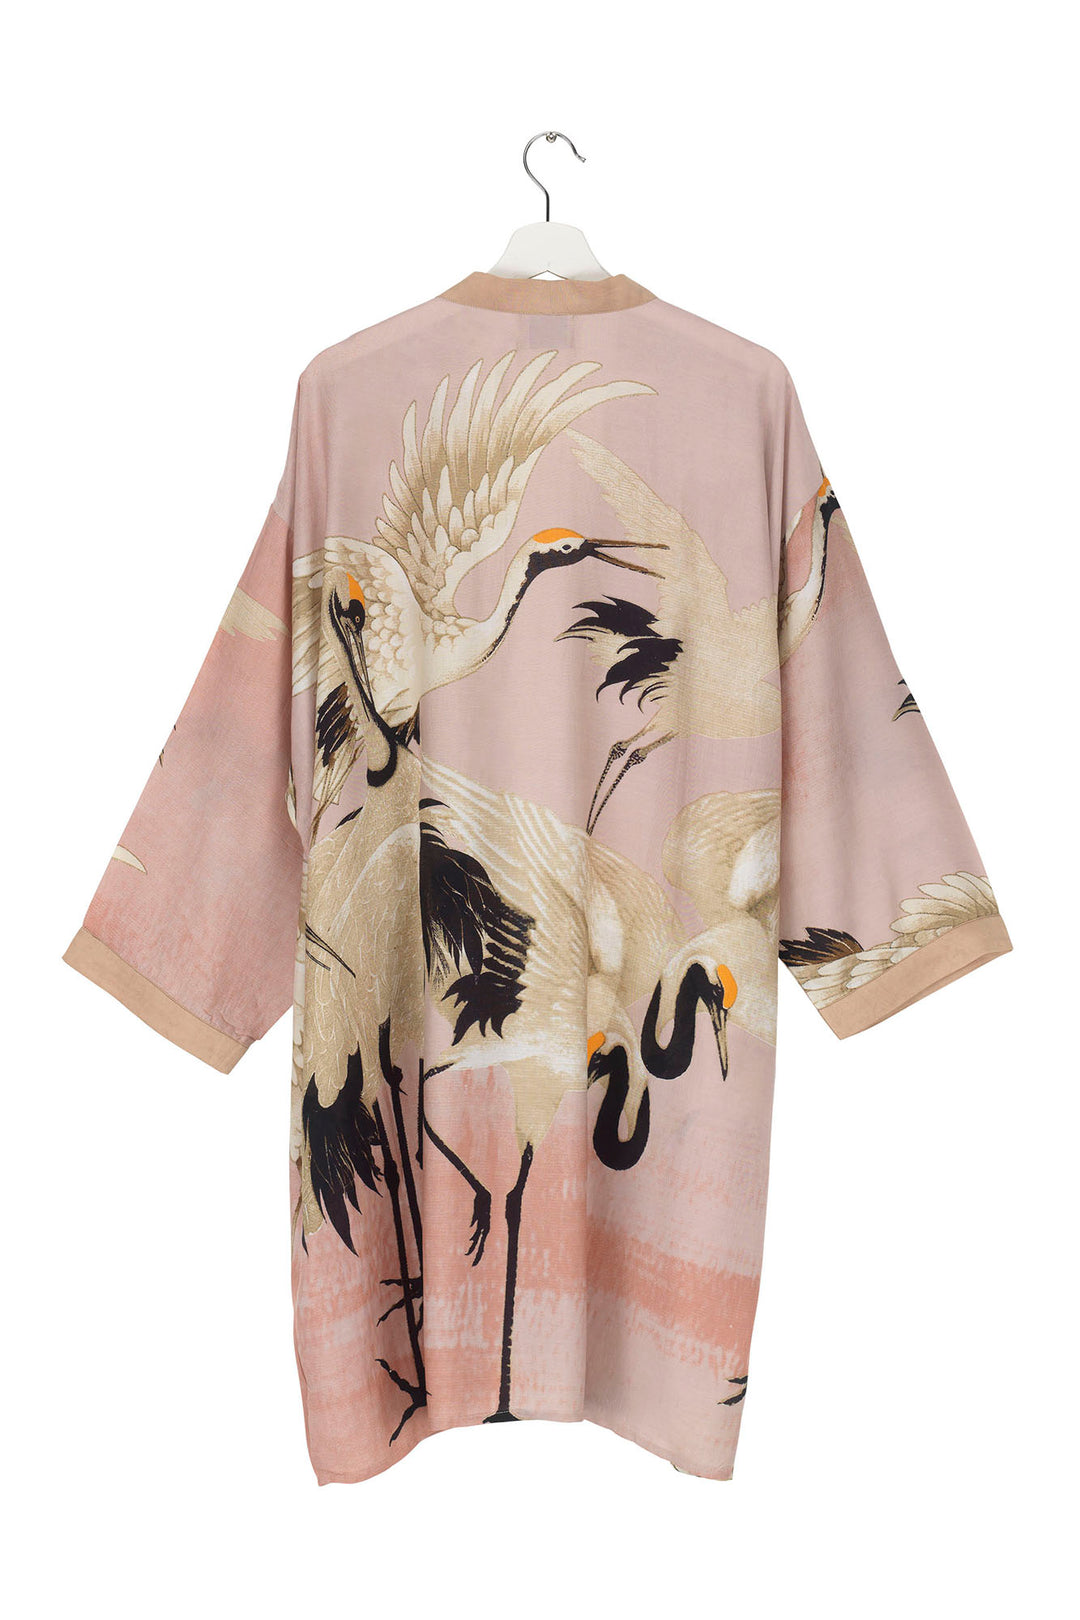 Stork Plaster Pink Collar Kimono - One Hundred Stars